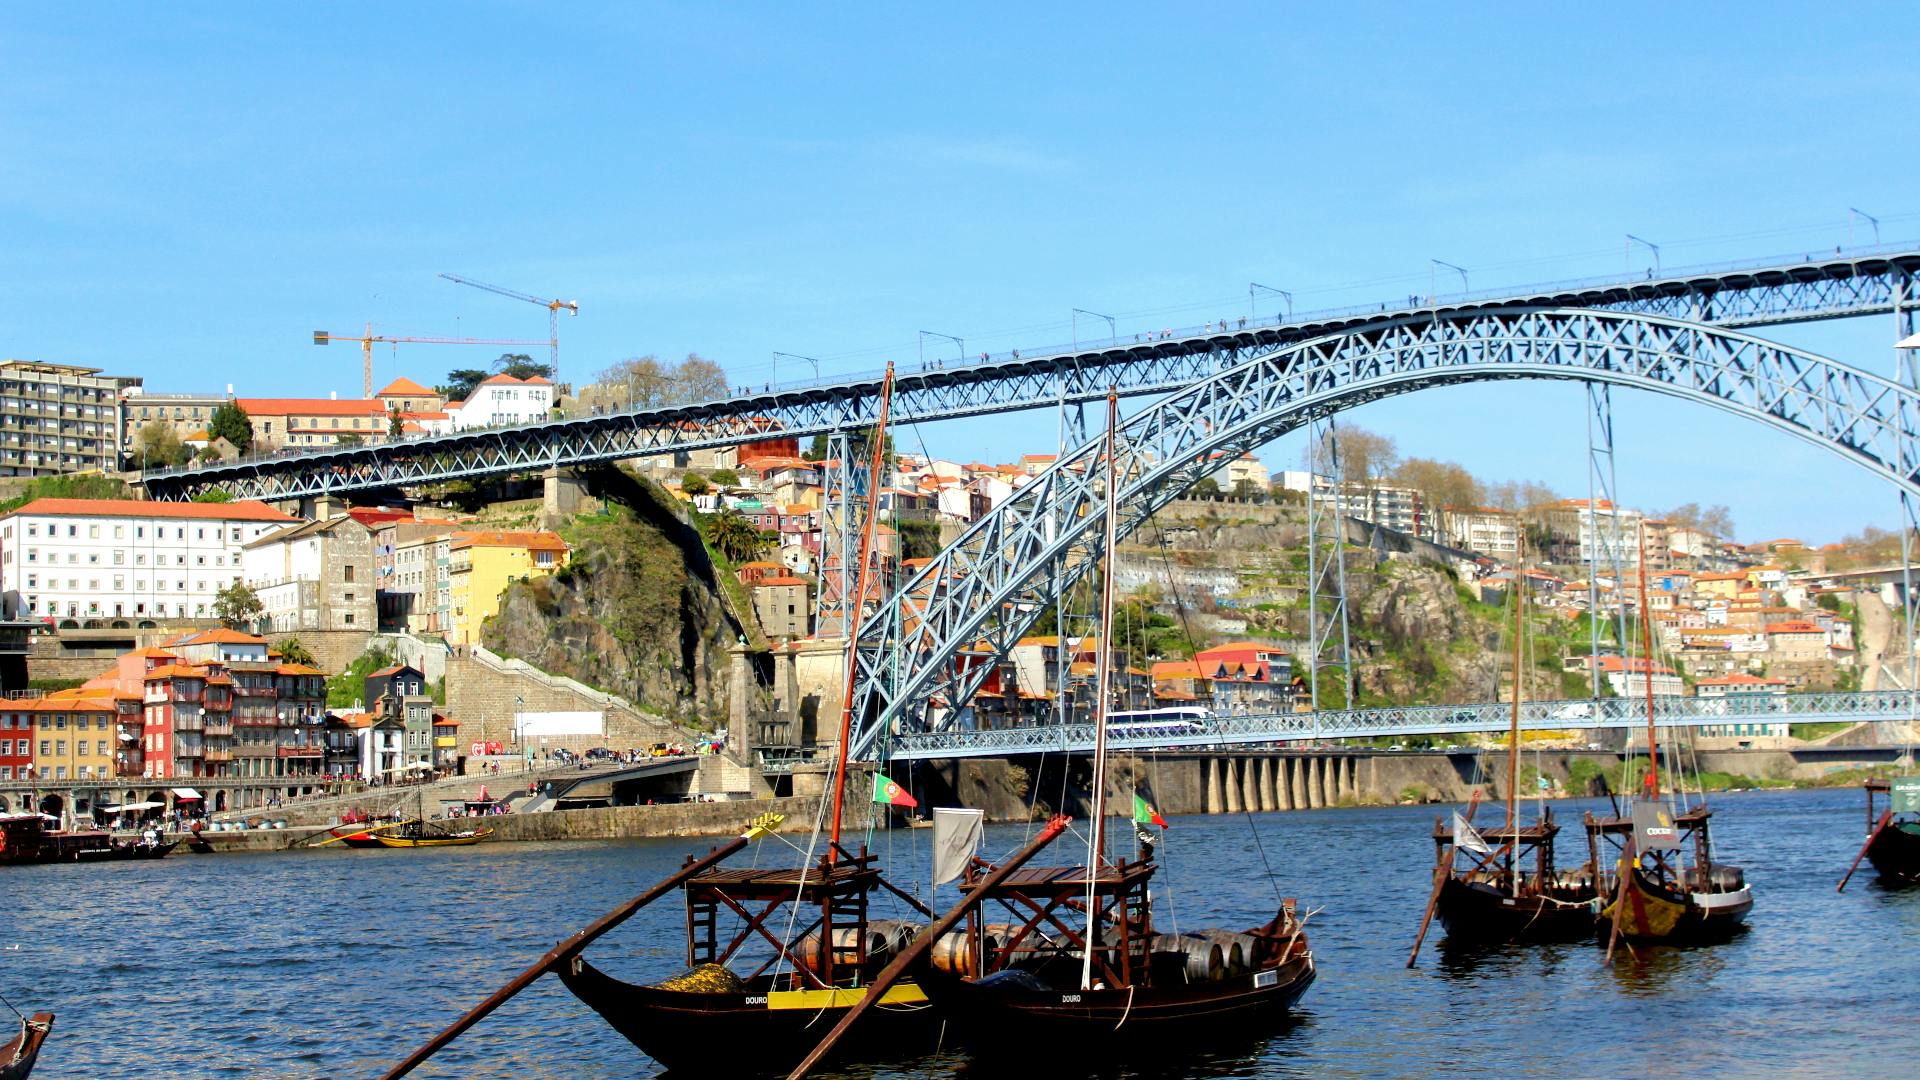 Discovery Game Vila Nova de Gaia di Porto viste e vini di Porto